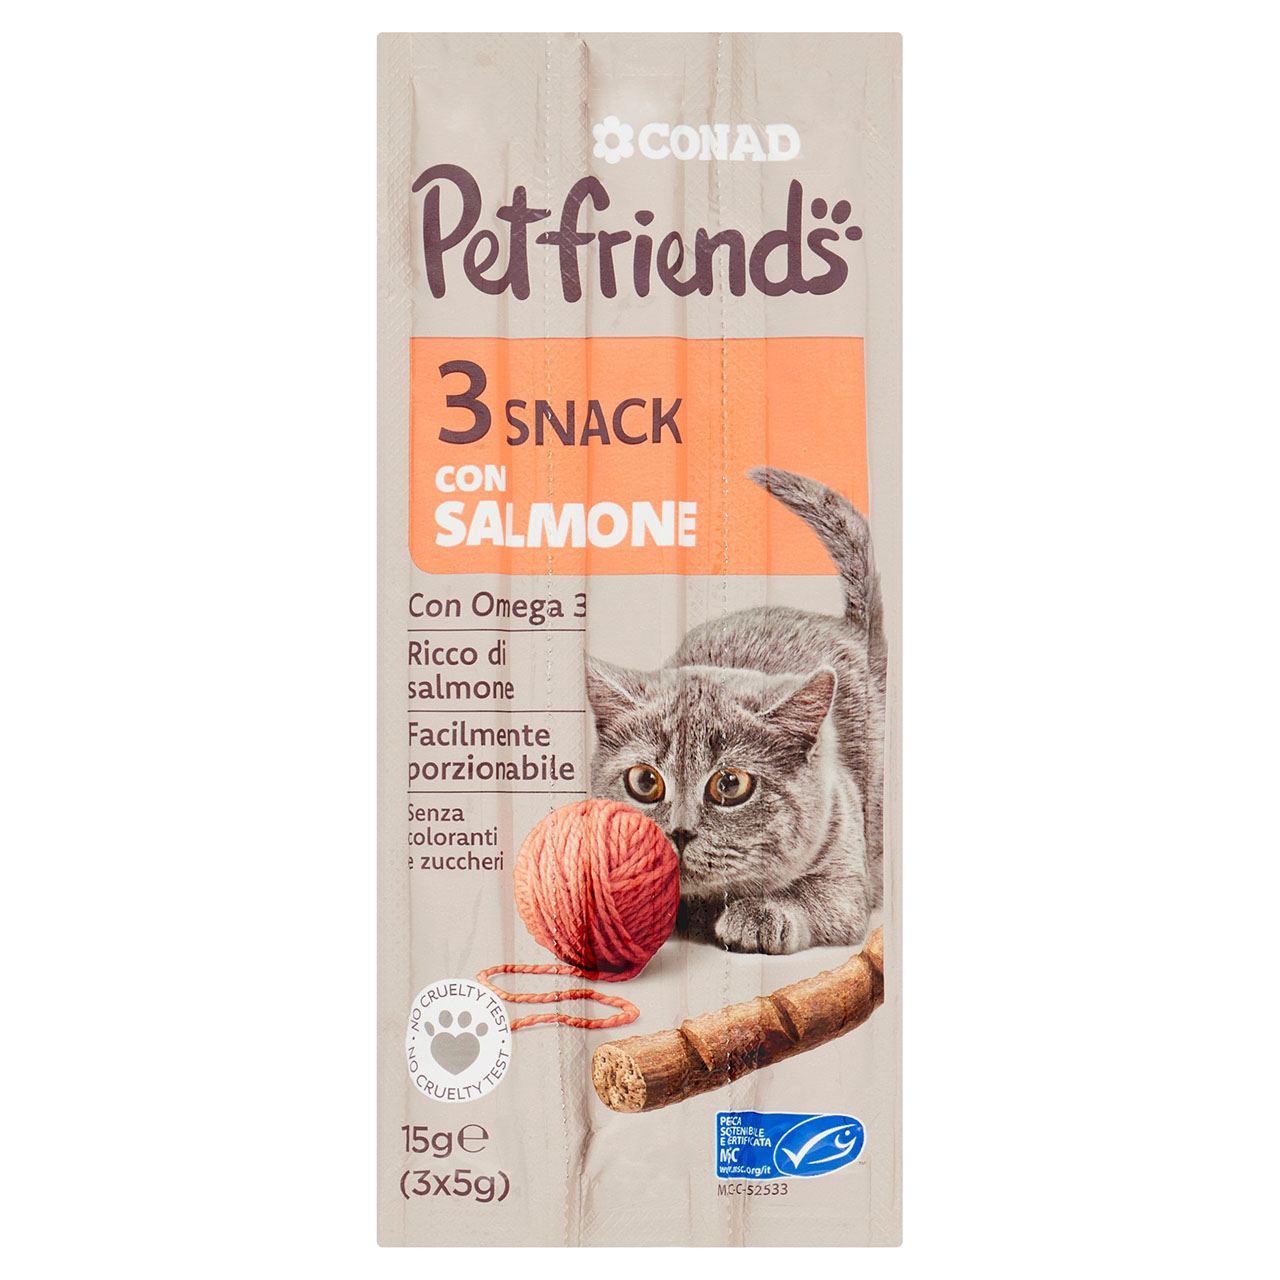 Petfriends Snack con Salmone 3 x 5 g Conad